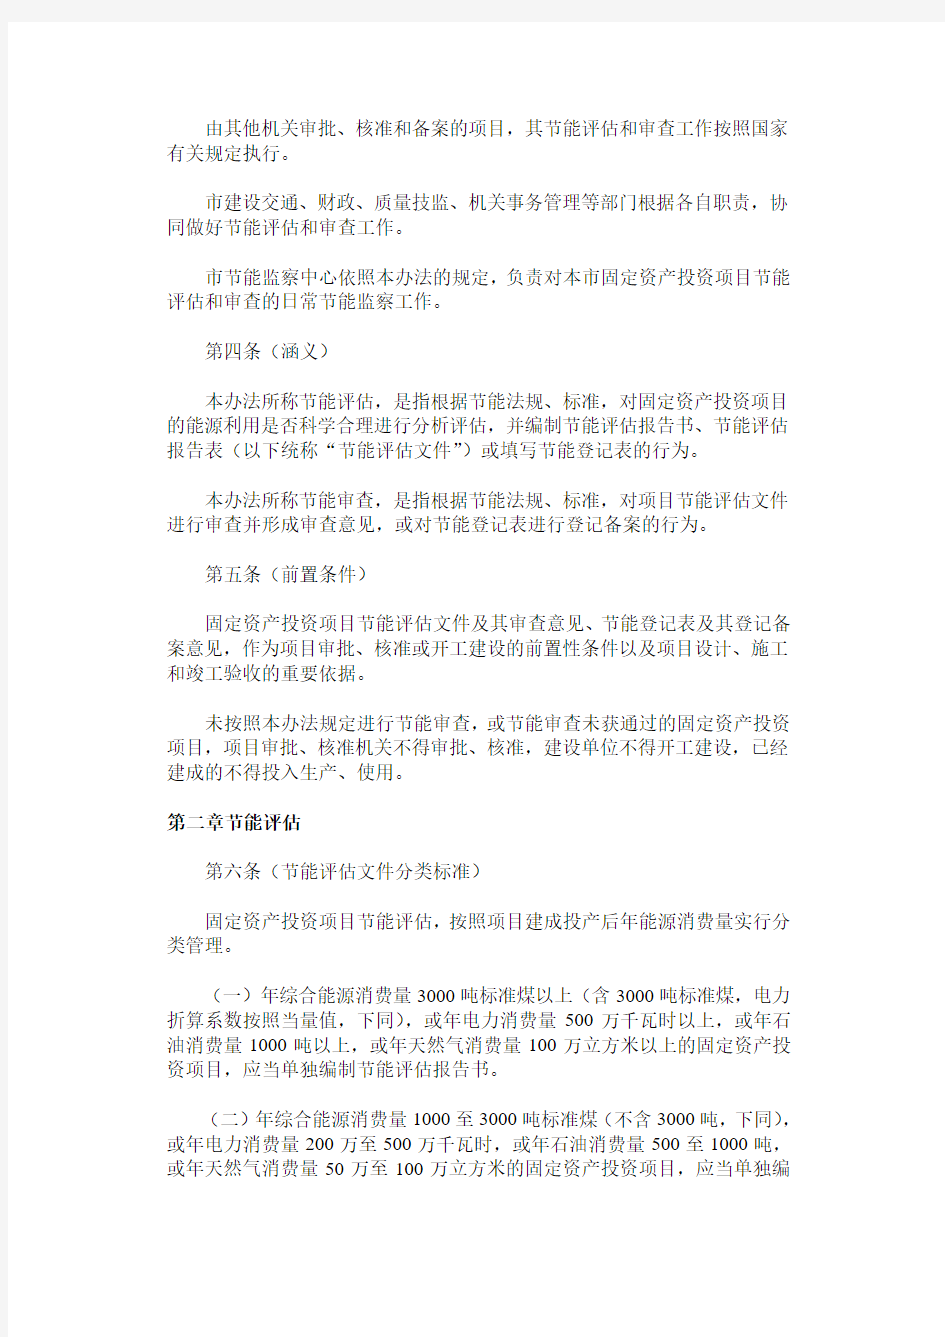 上海市固定资产投资项目节能评估和审查暂行办法(沪府发[2011]38号)